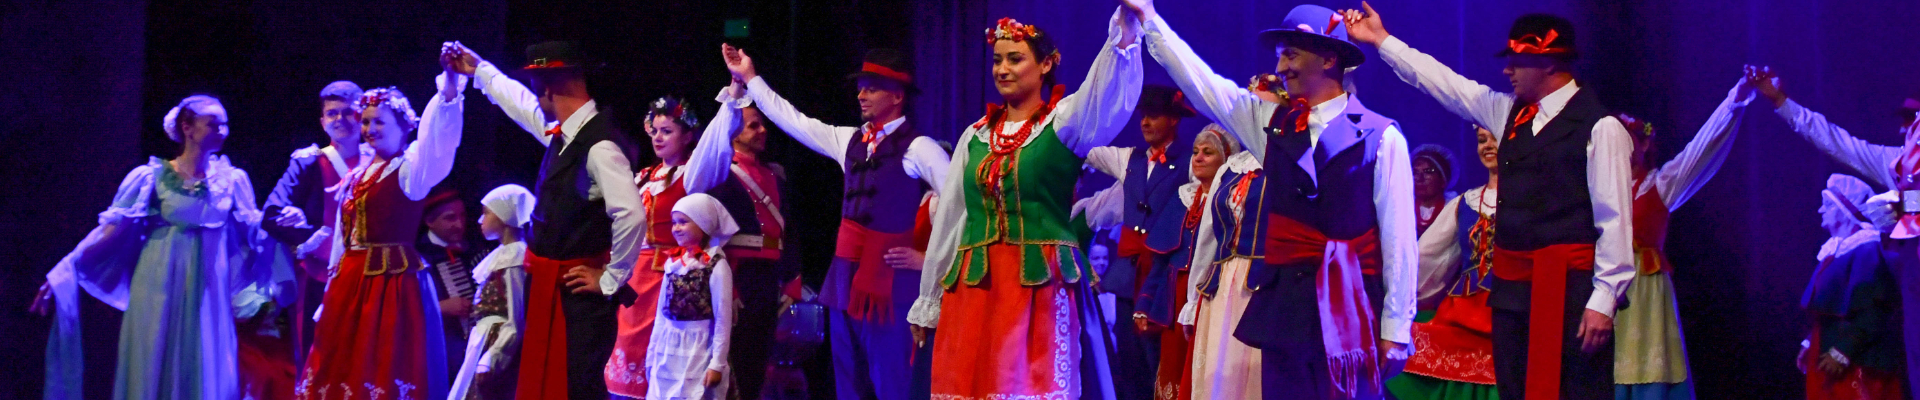 Jubileusz 25-lecia Zespołu Folklorystycznego Dzieci Kujaw